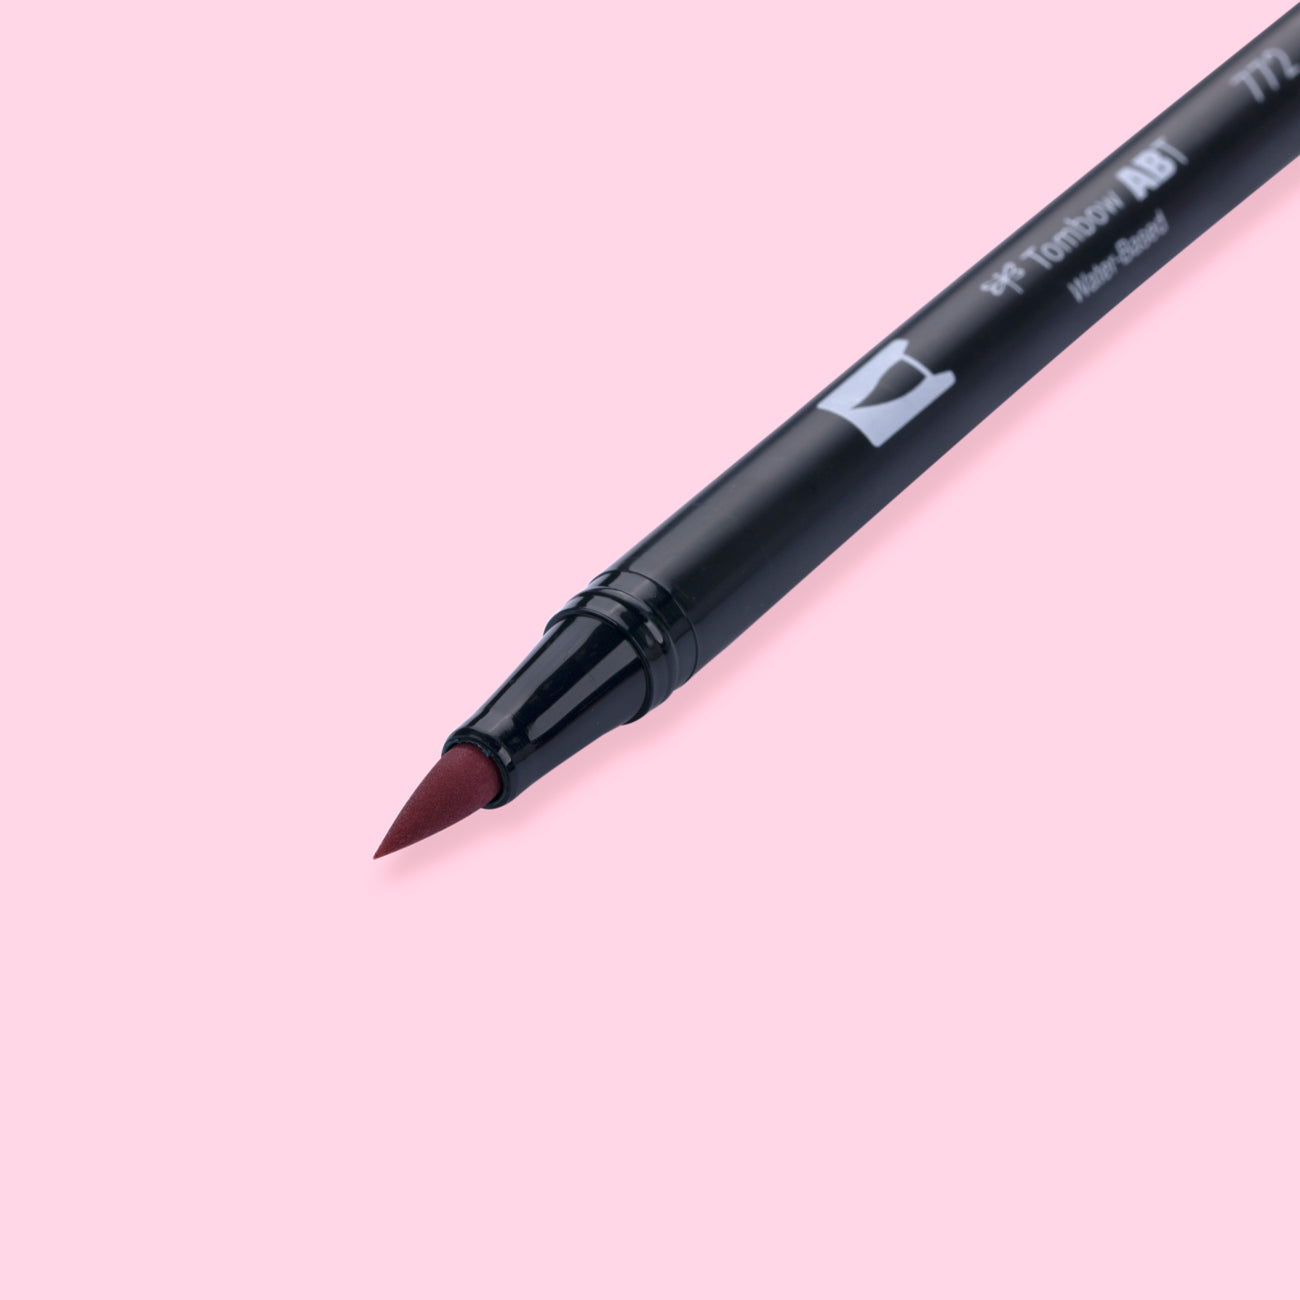 Tombow Dual Brush Pen - 772 Blush